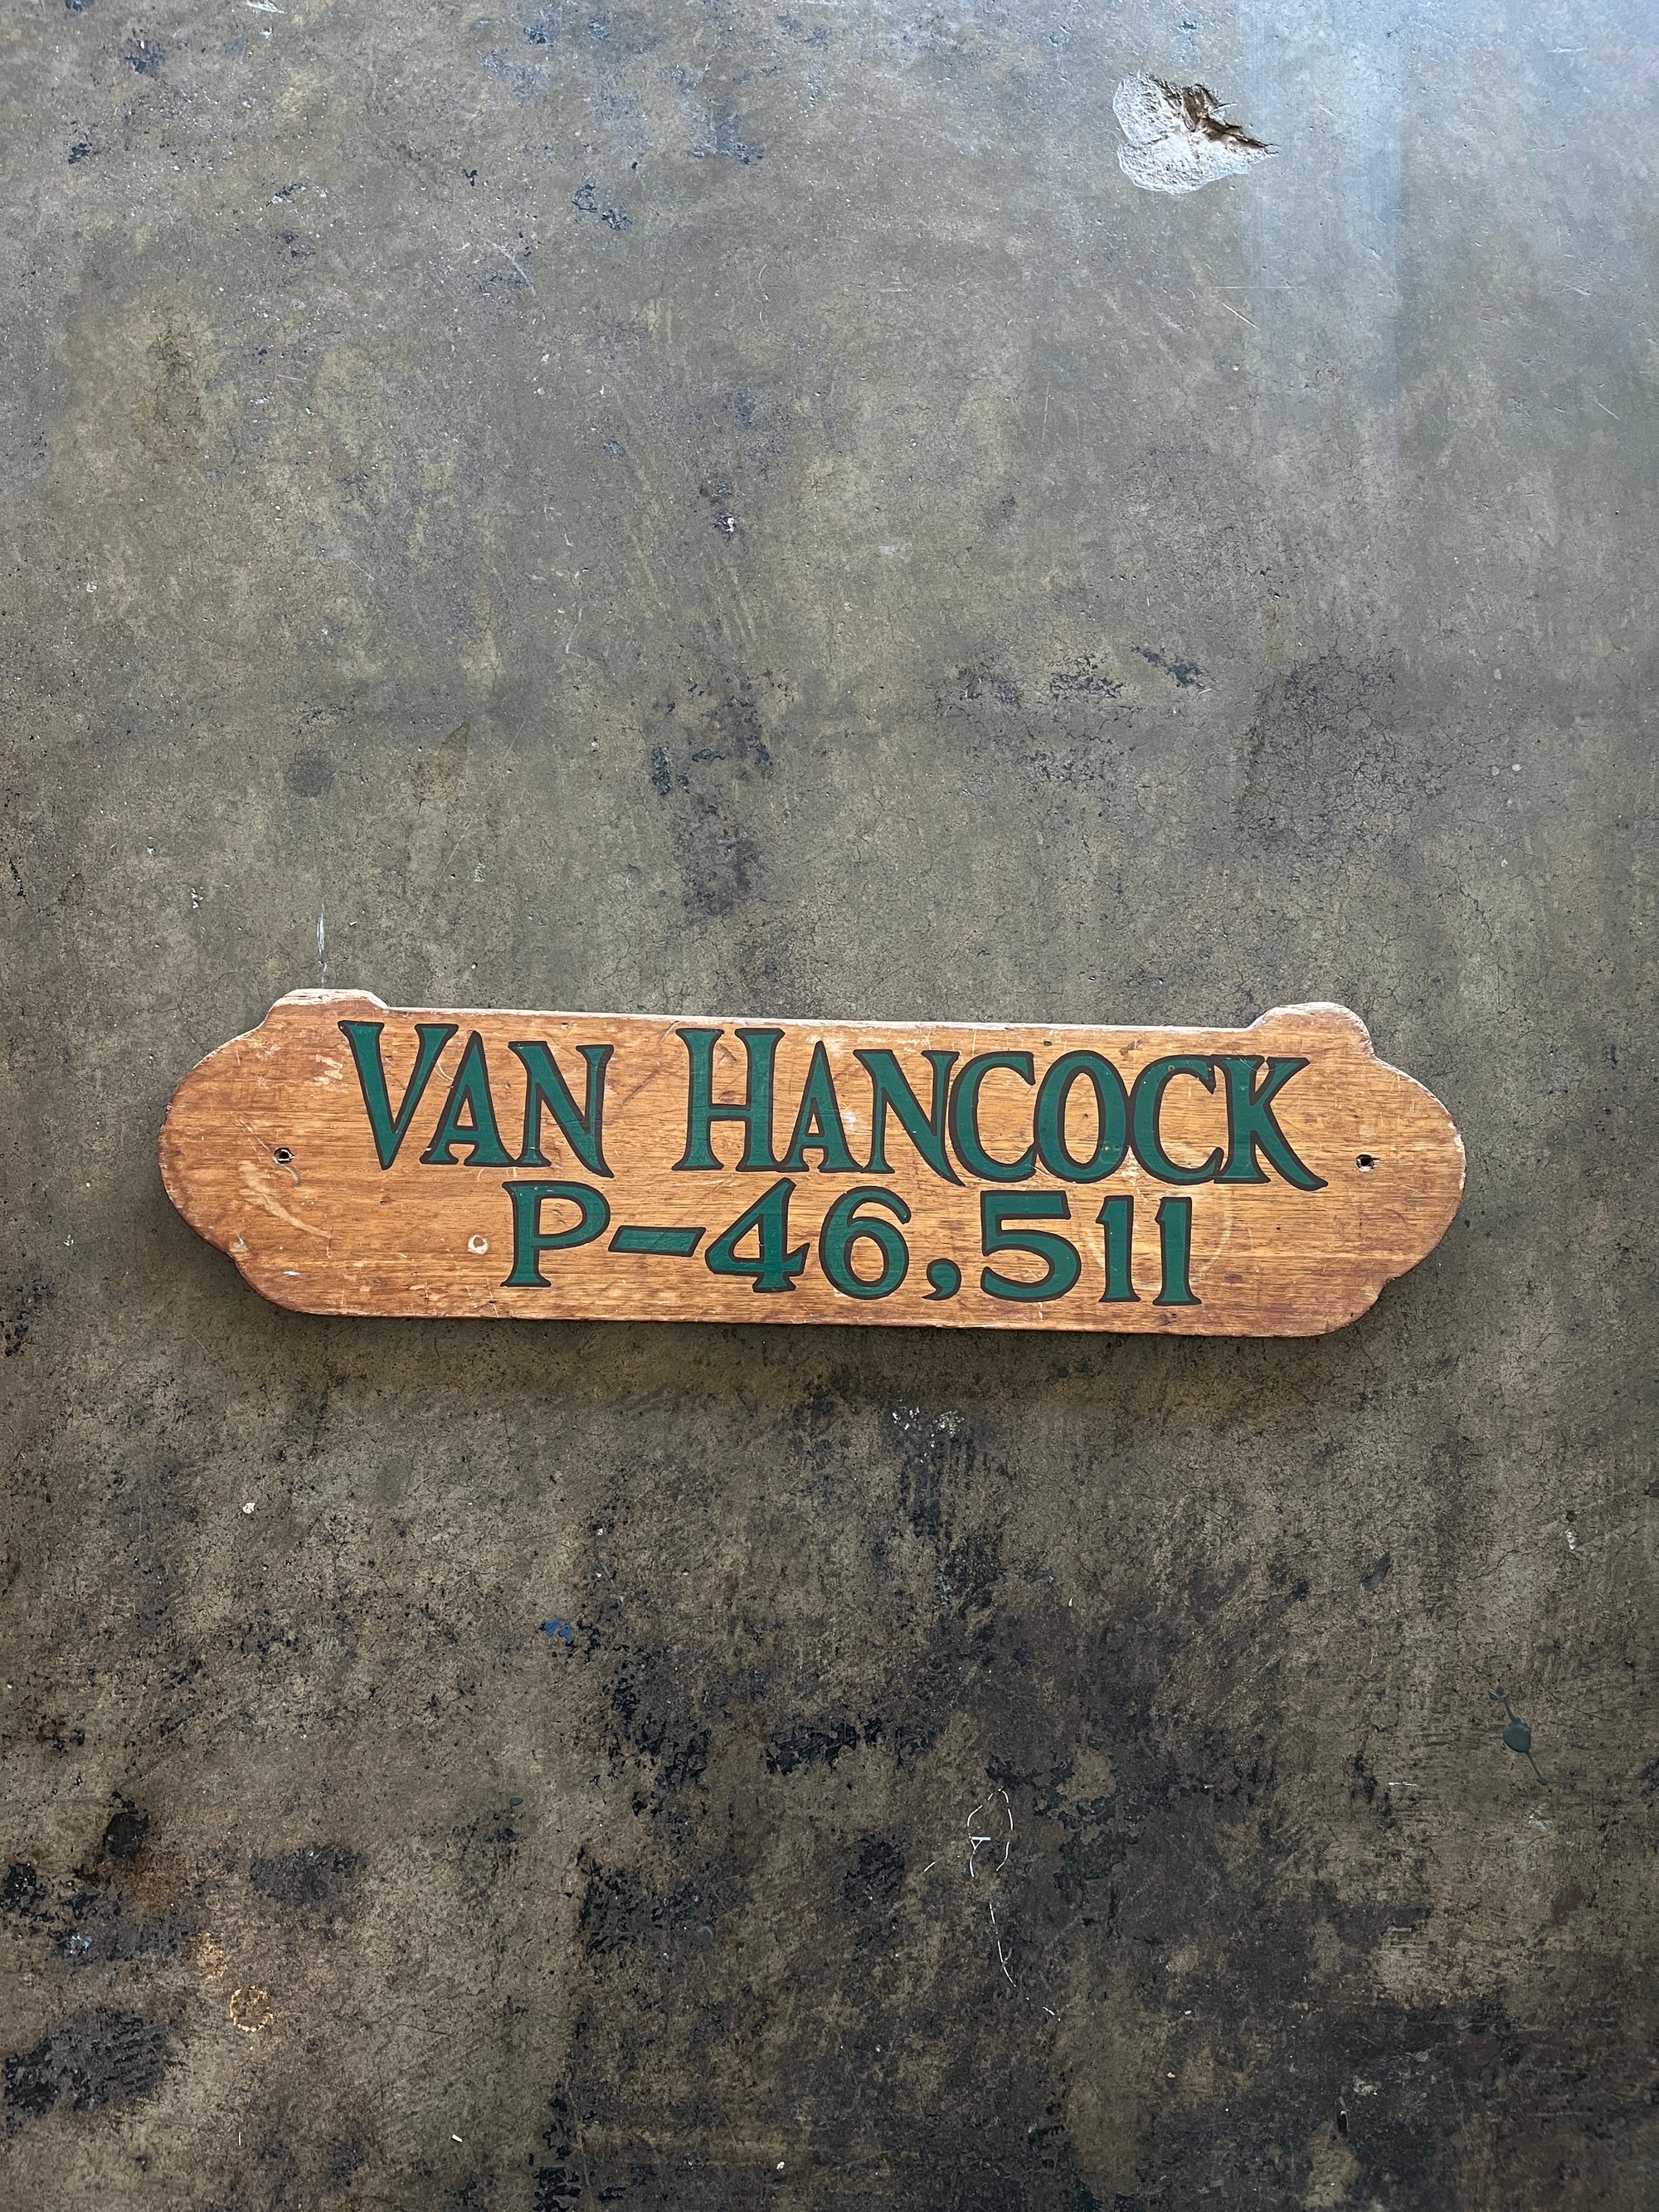 Van Hancock Wooden Plaque